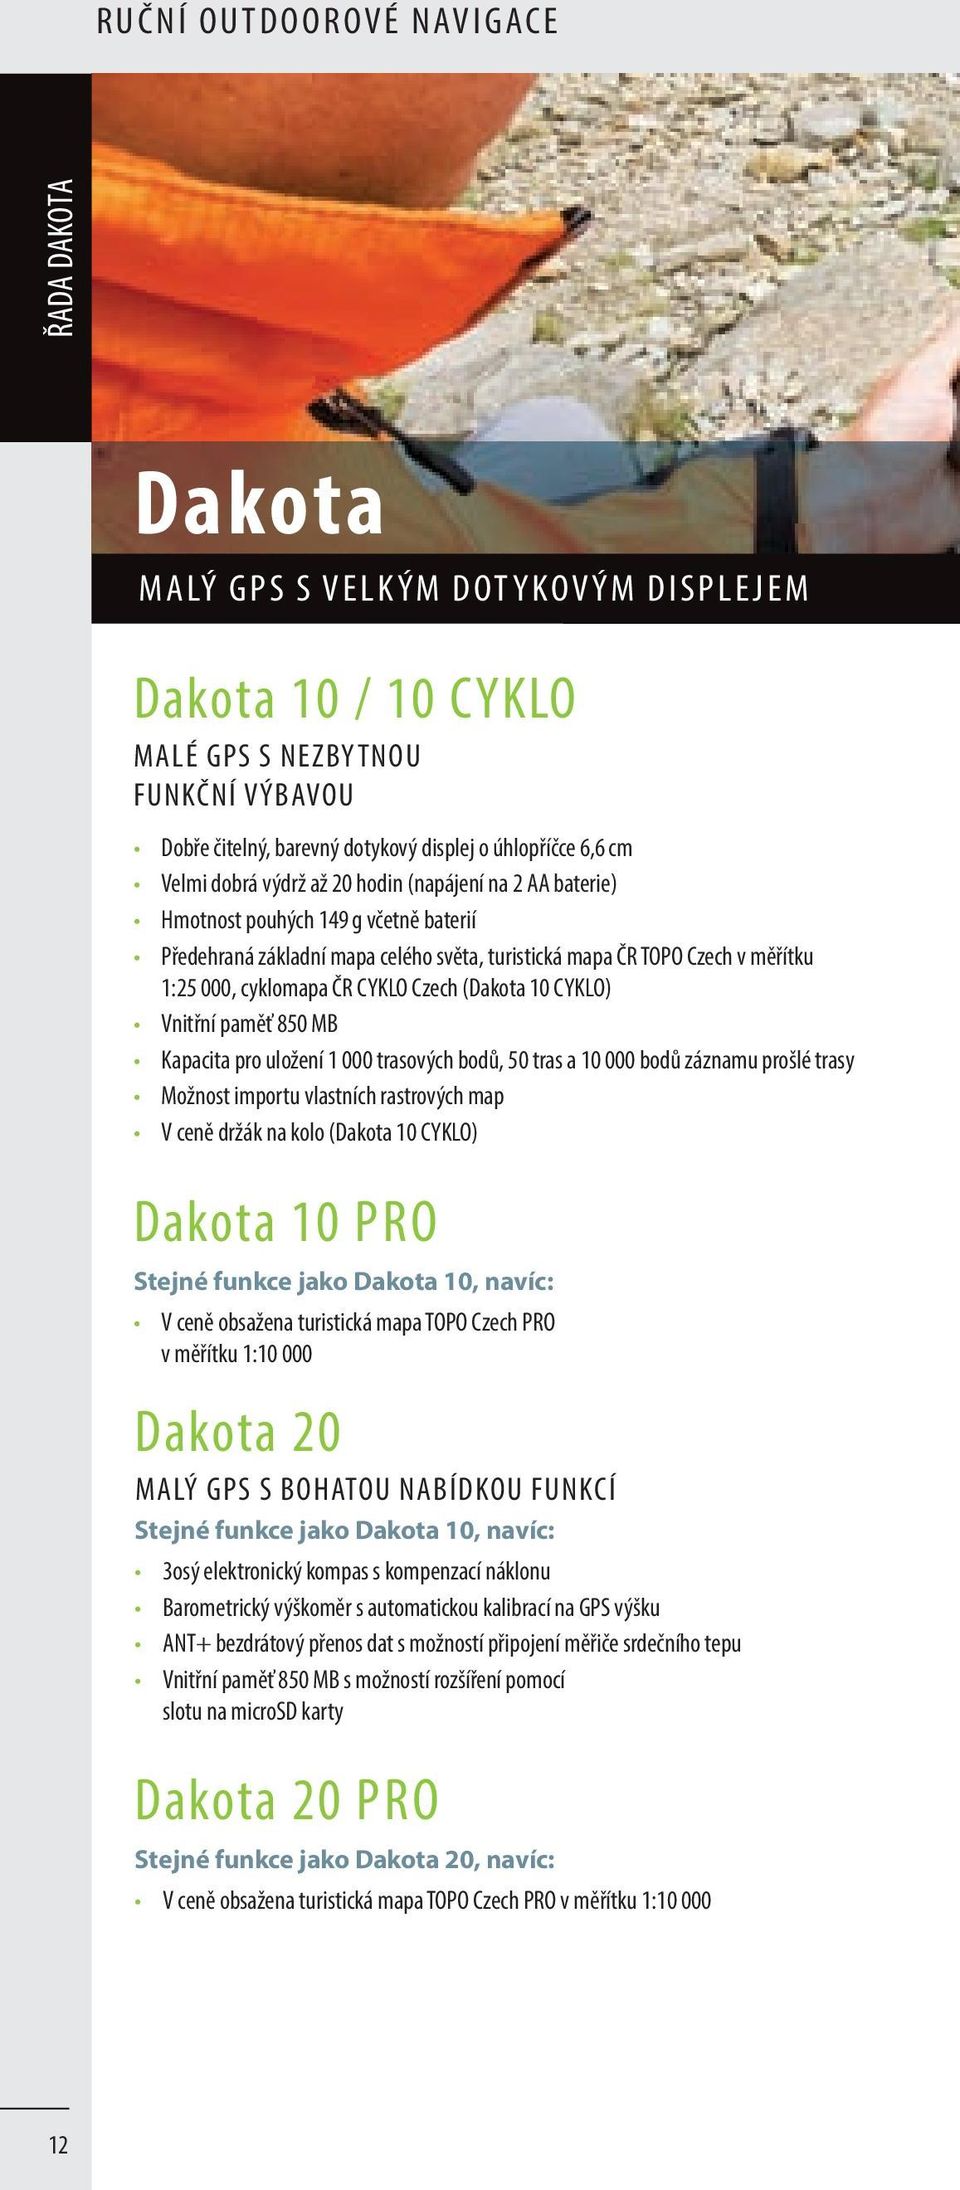 CYKLO Czech (Dakota 10 CYKLO) Vnitřní paměť 850 MB Kapacita pro uložení 1 000 trasových bodů, 50 tras a 10 000 bodů záznamu prošlé trasy Možnost importu vlastních rastrových map V ceně držák na kolo